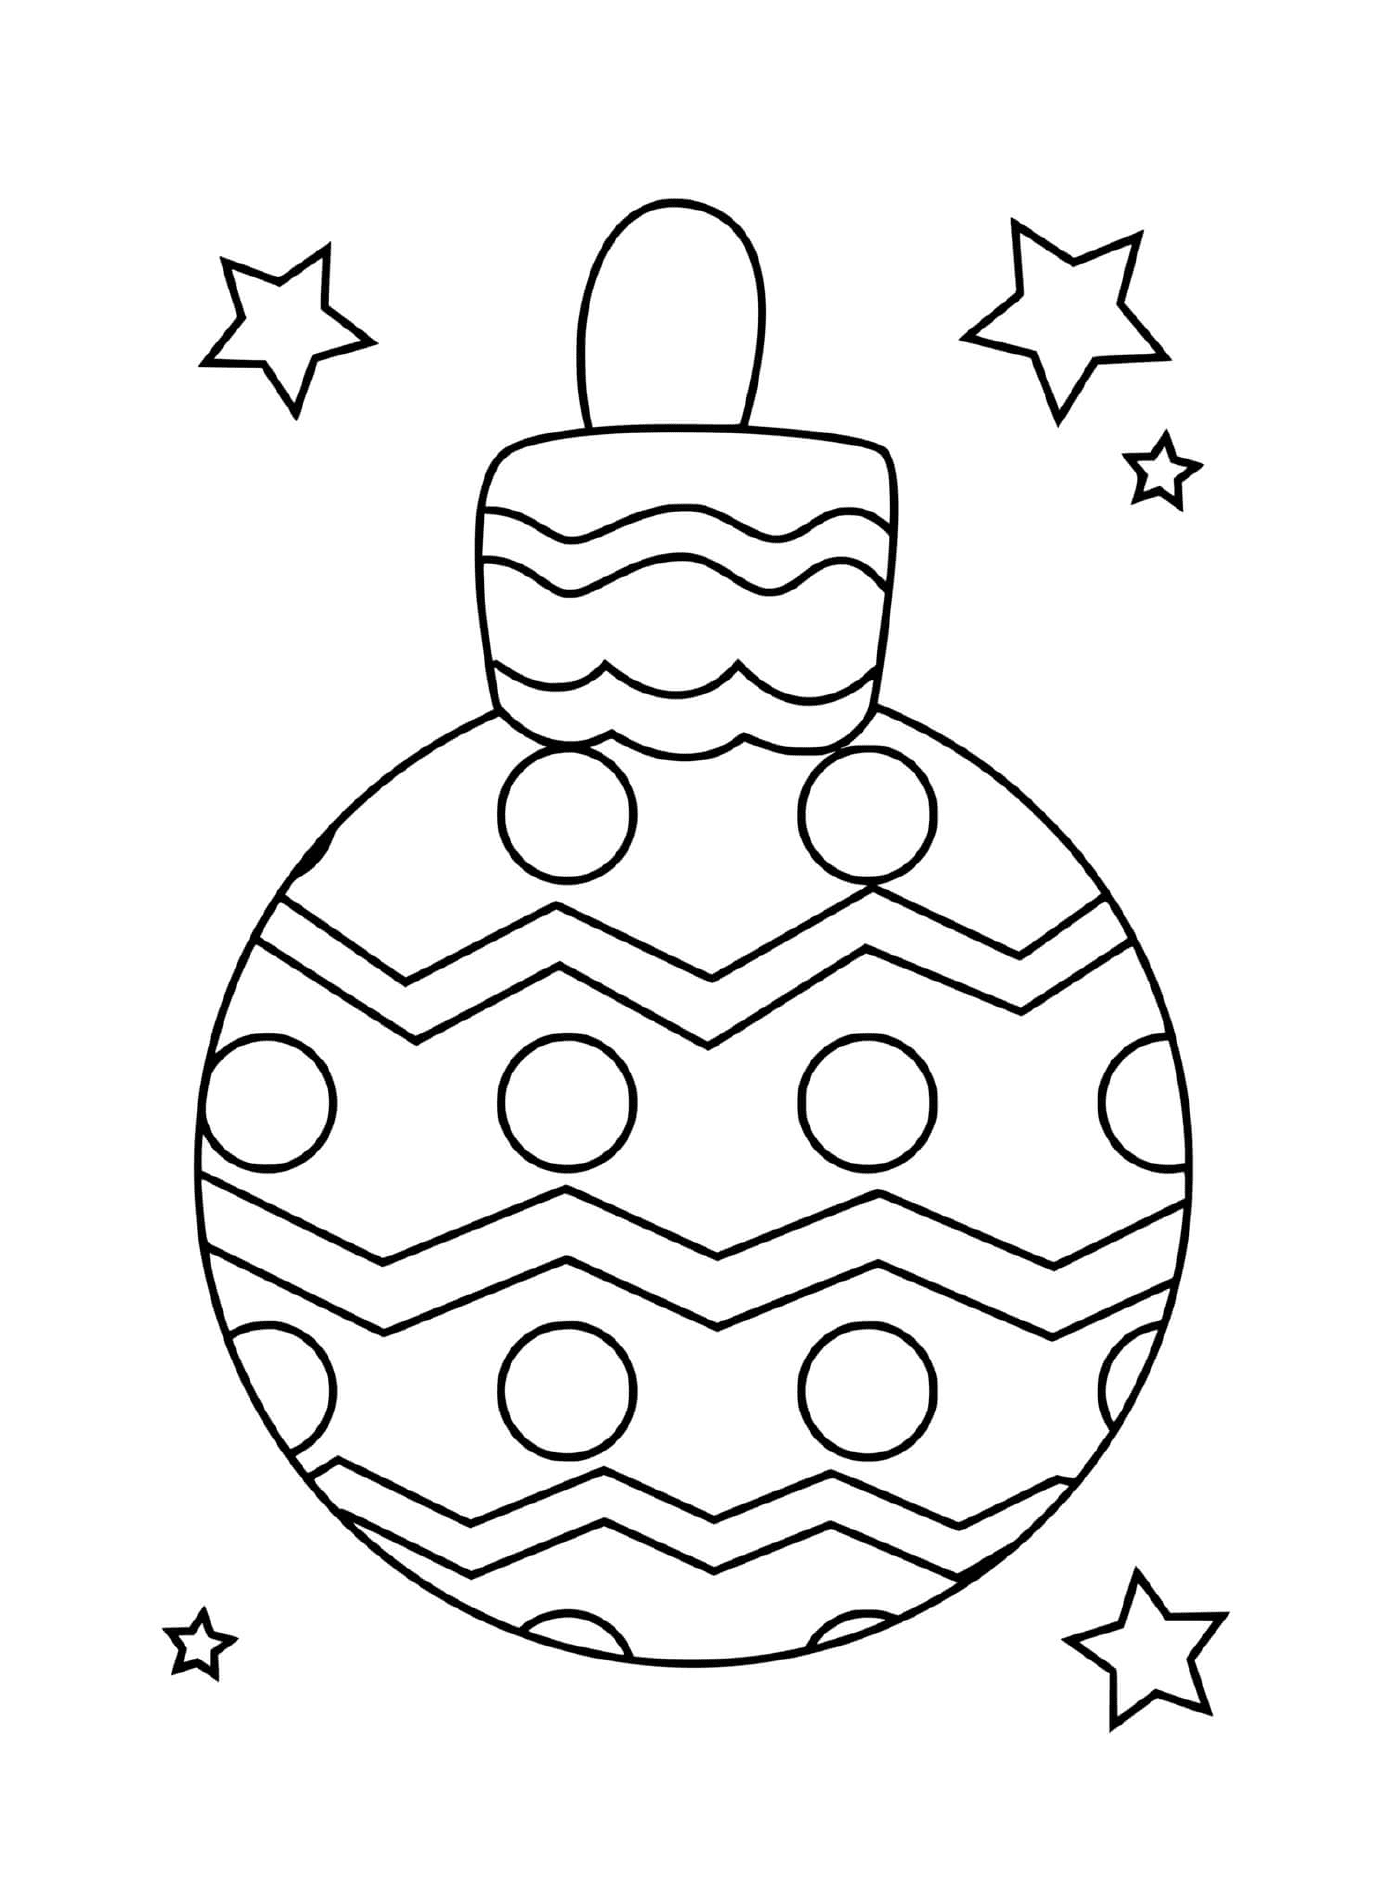  Простой рождественский мяч с кружками и зигзагами 